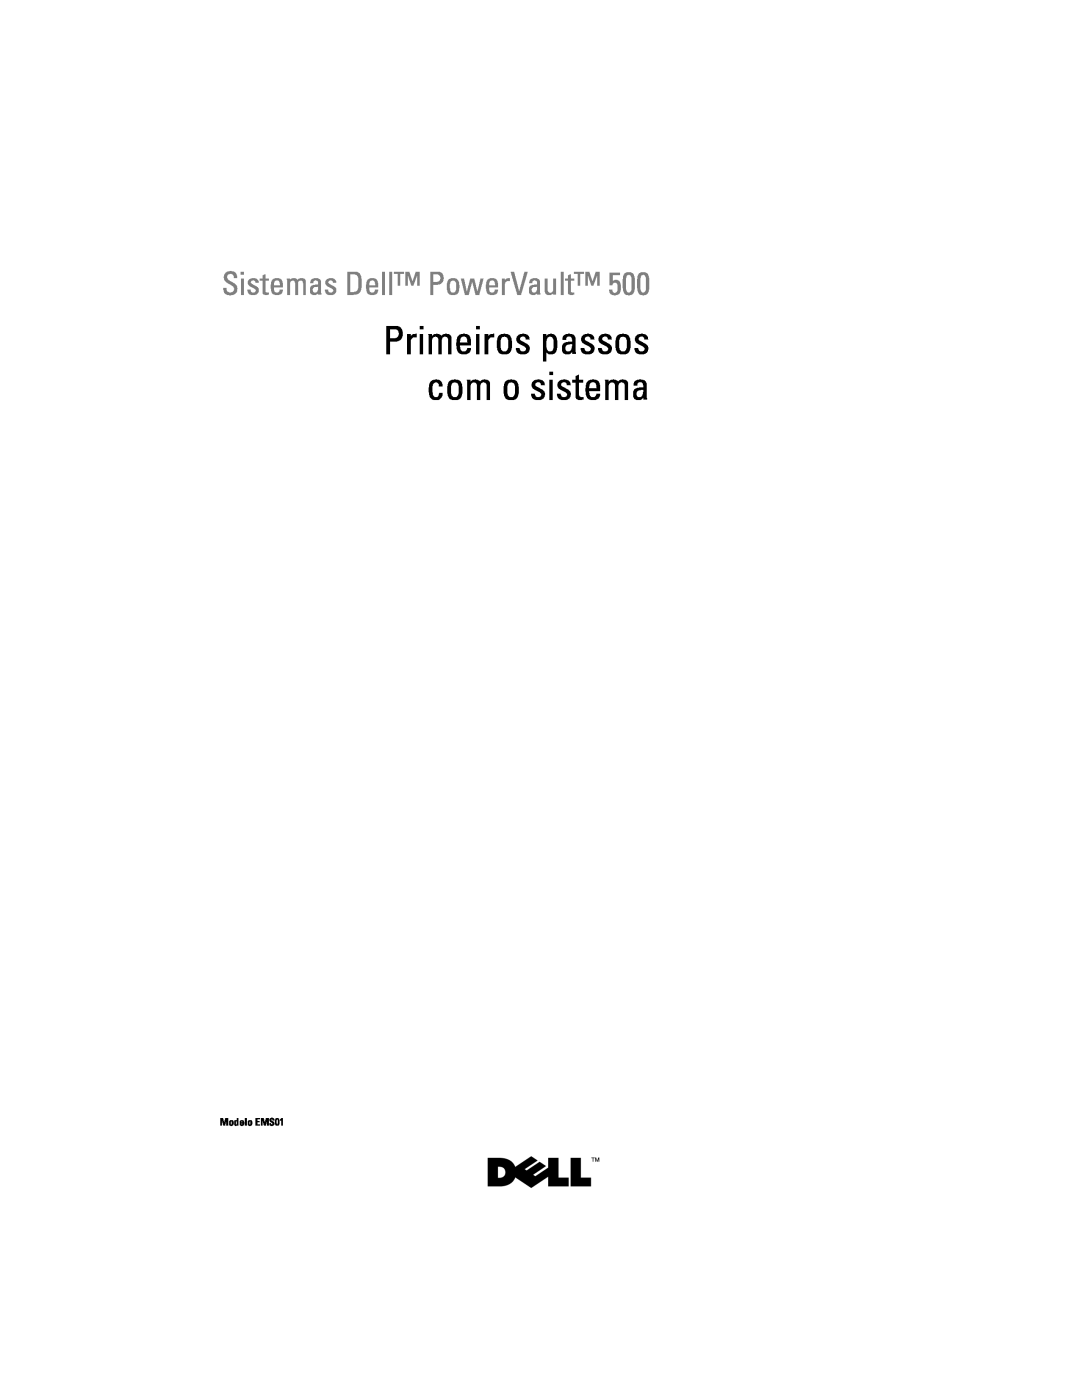 Dell YX154 manual Primeiros passos com o sistema, Sistemas Dell PowerVault, Modelo EMS01 